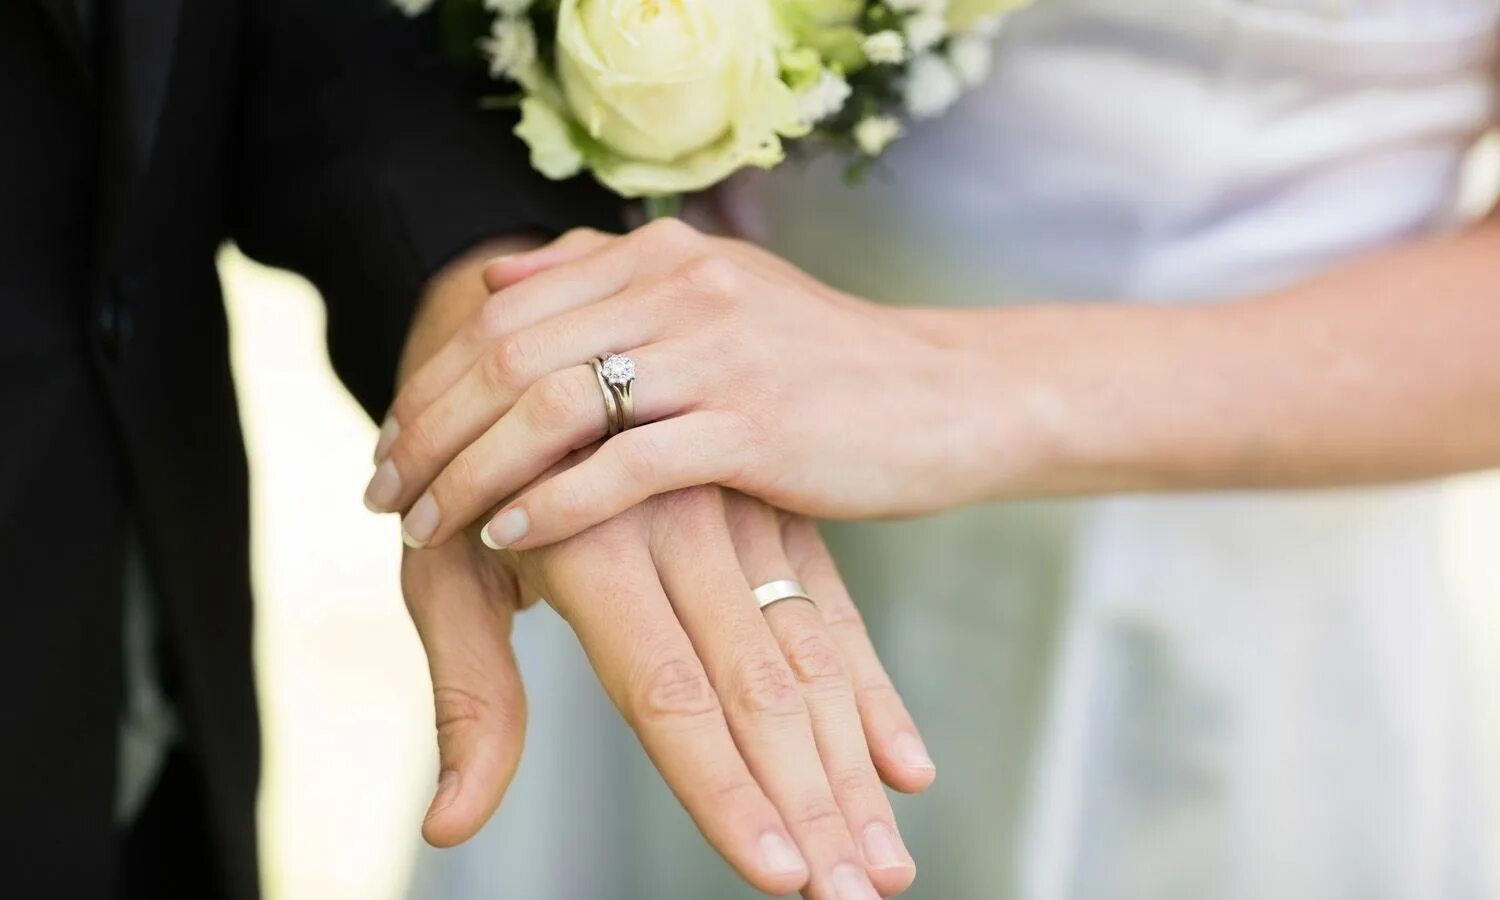 Кольцо брак на какой руке. Руки молодоженов с кольцами. Свадебные кольца на руках. Руки жениха и невесты с кольцами. Обручальные и помолвочные кольца.